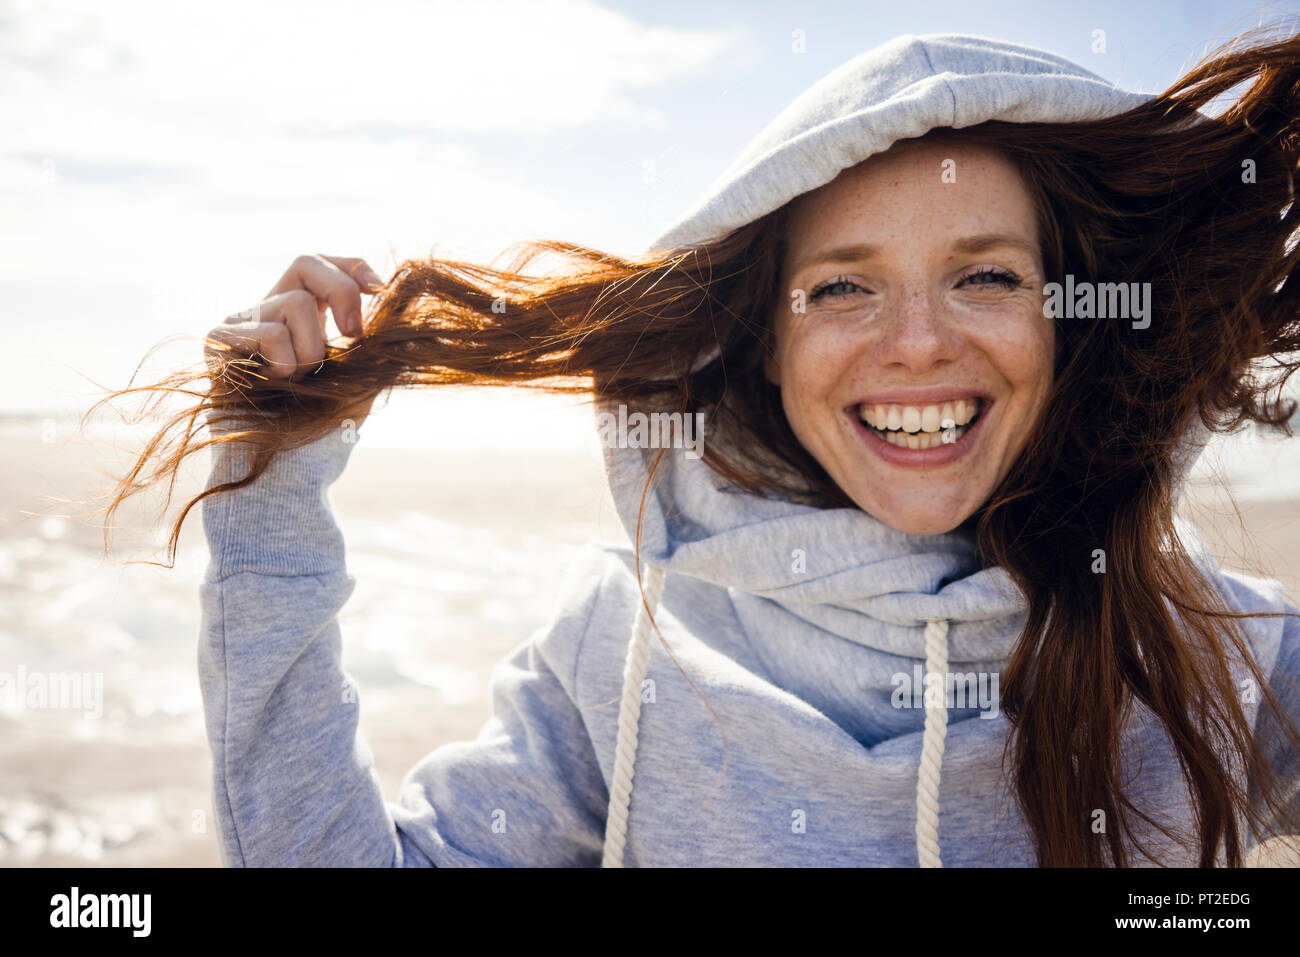 Woman having fun on a windy beach, wearing hood Stock Photo